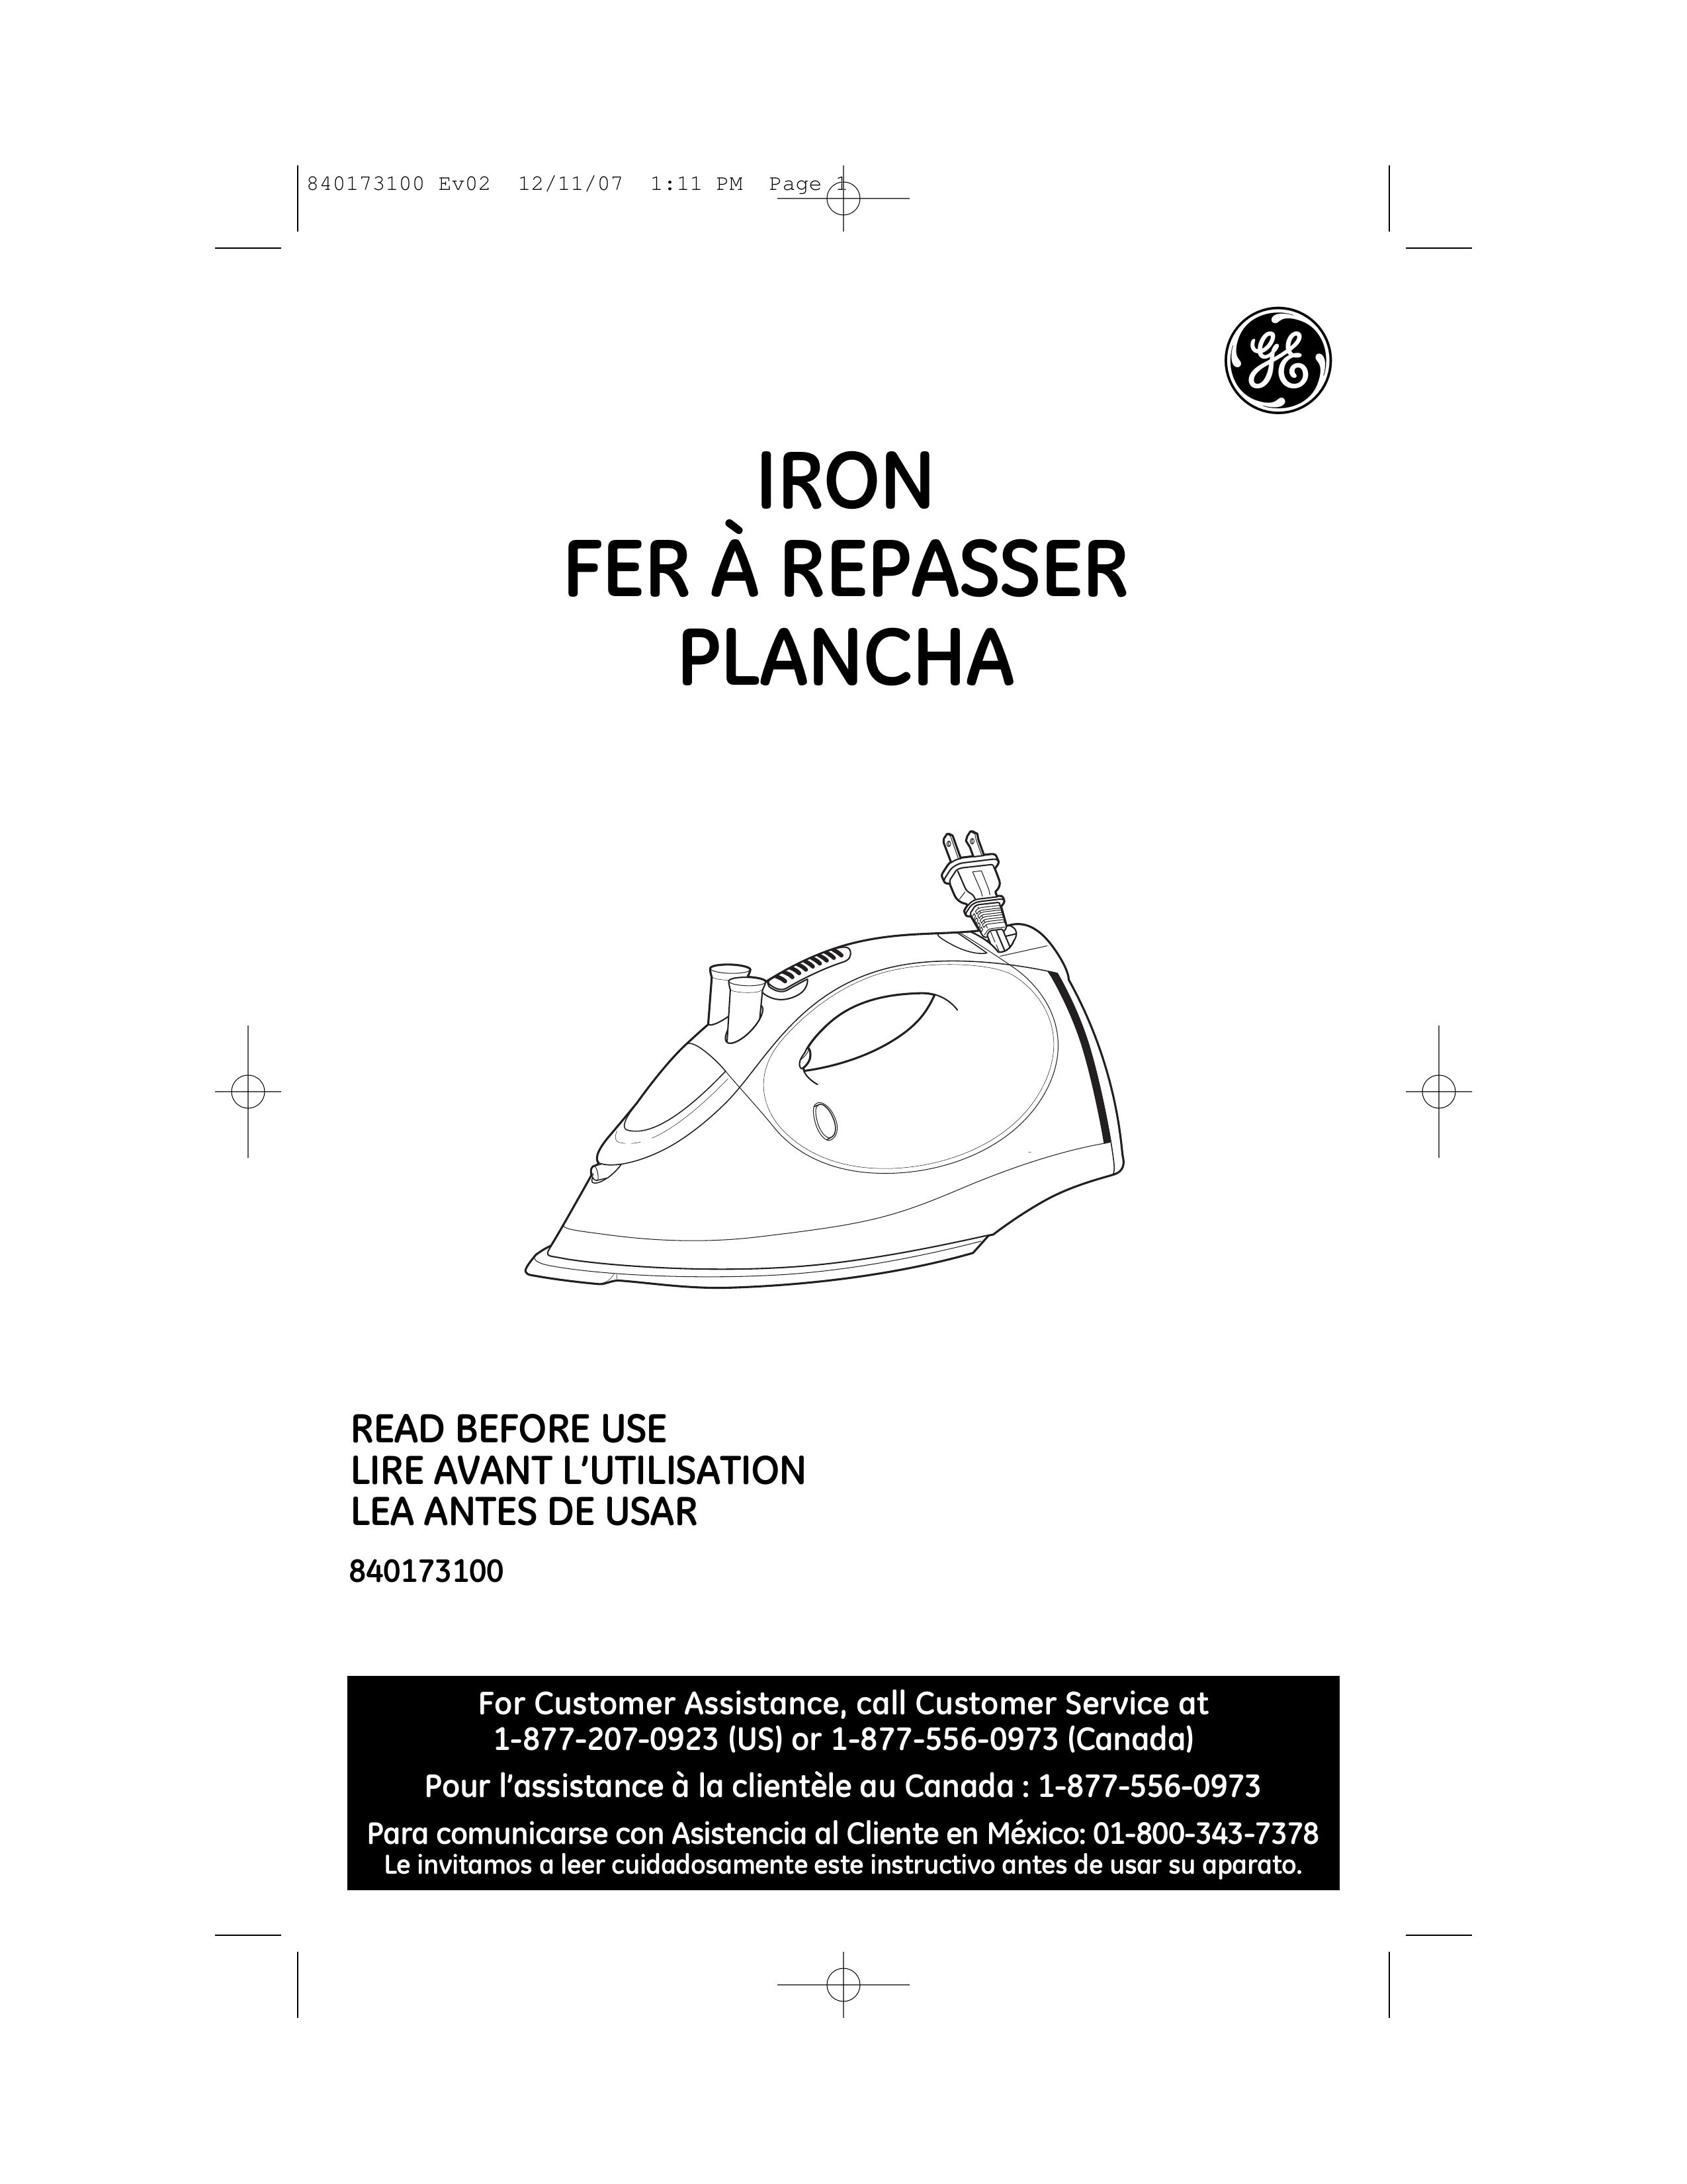 GE 169173 Iron User Manual